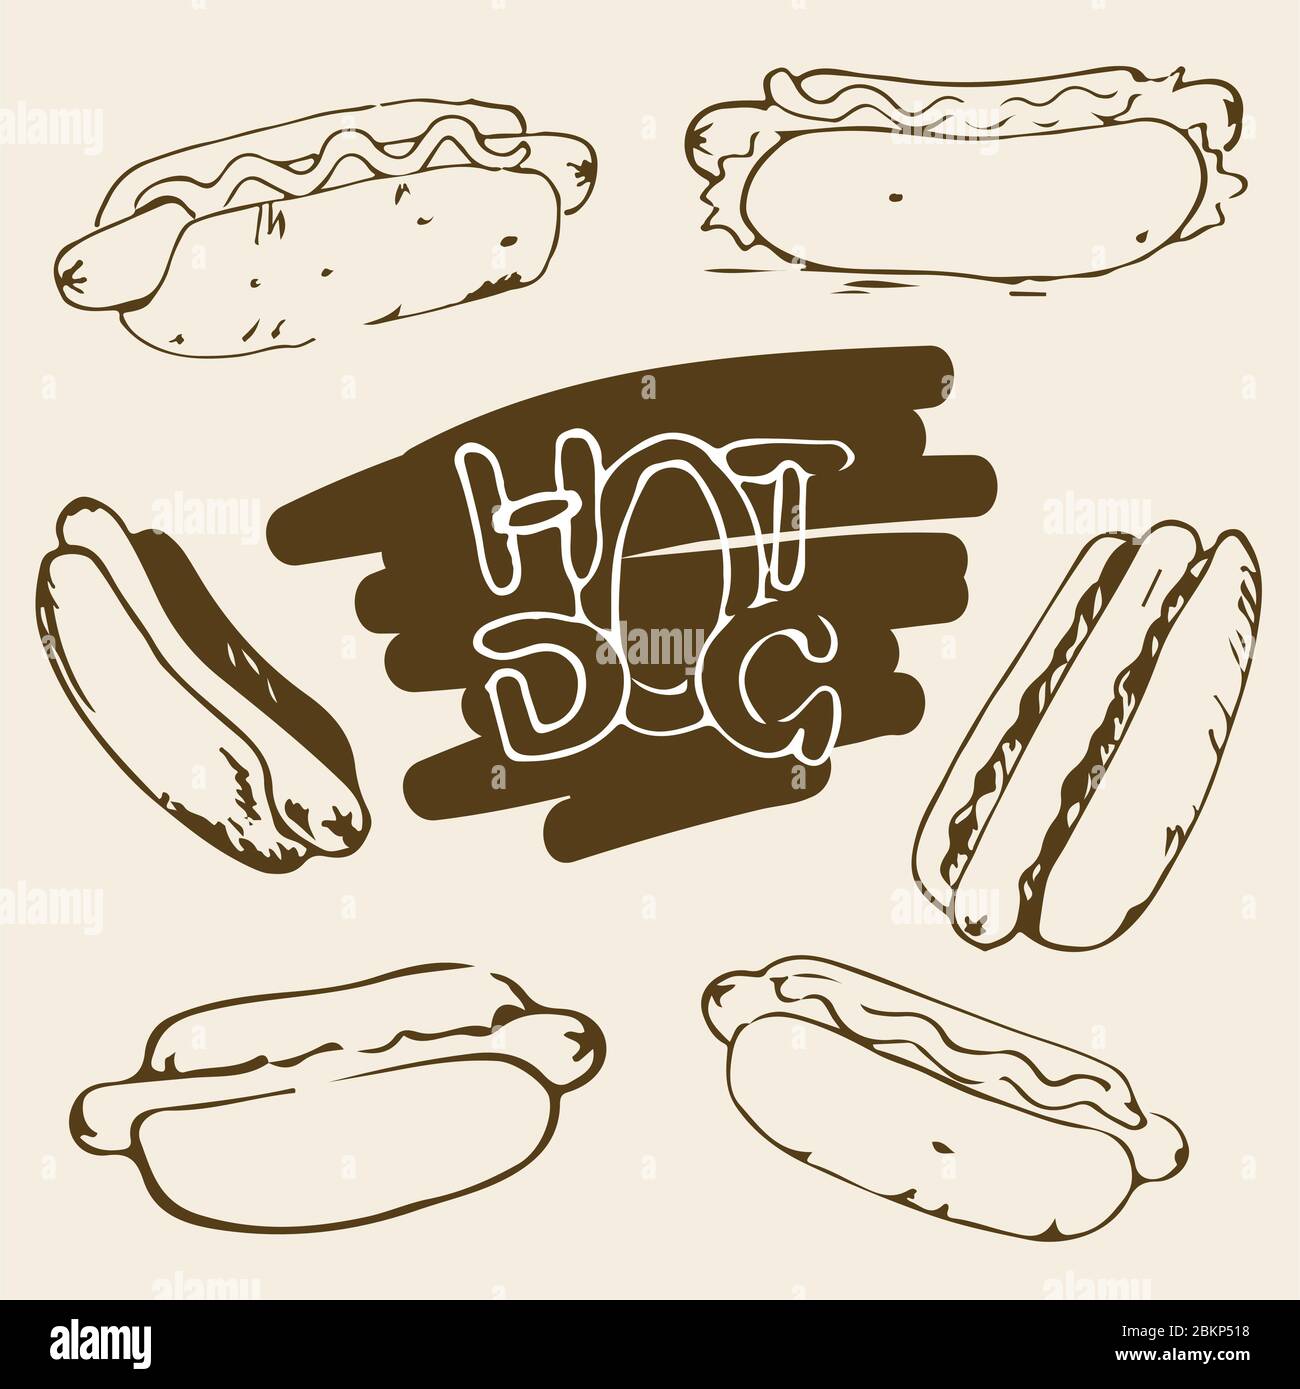 Handgezeichnete Abbildungen von Hot Dog. Fast-Food-Designelemente, Skizzen von Hotdogs mit Sauce und Mayonnaise. Monochrome EPS8-Vektorgrafiken. Stock Vektor